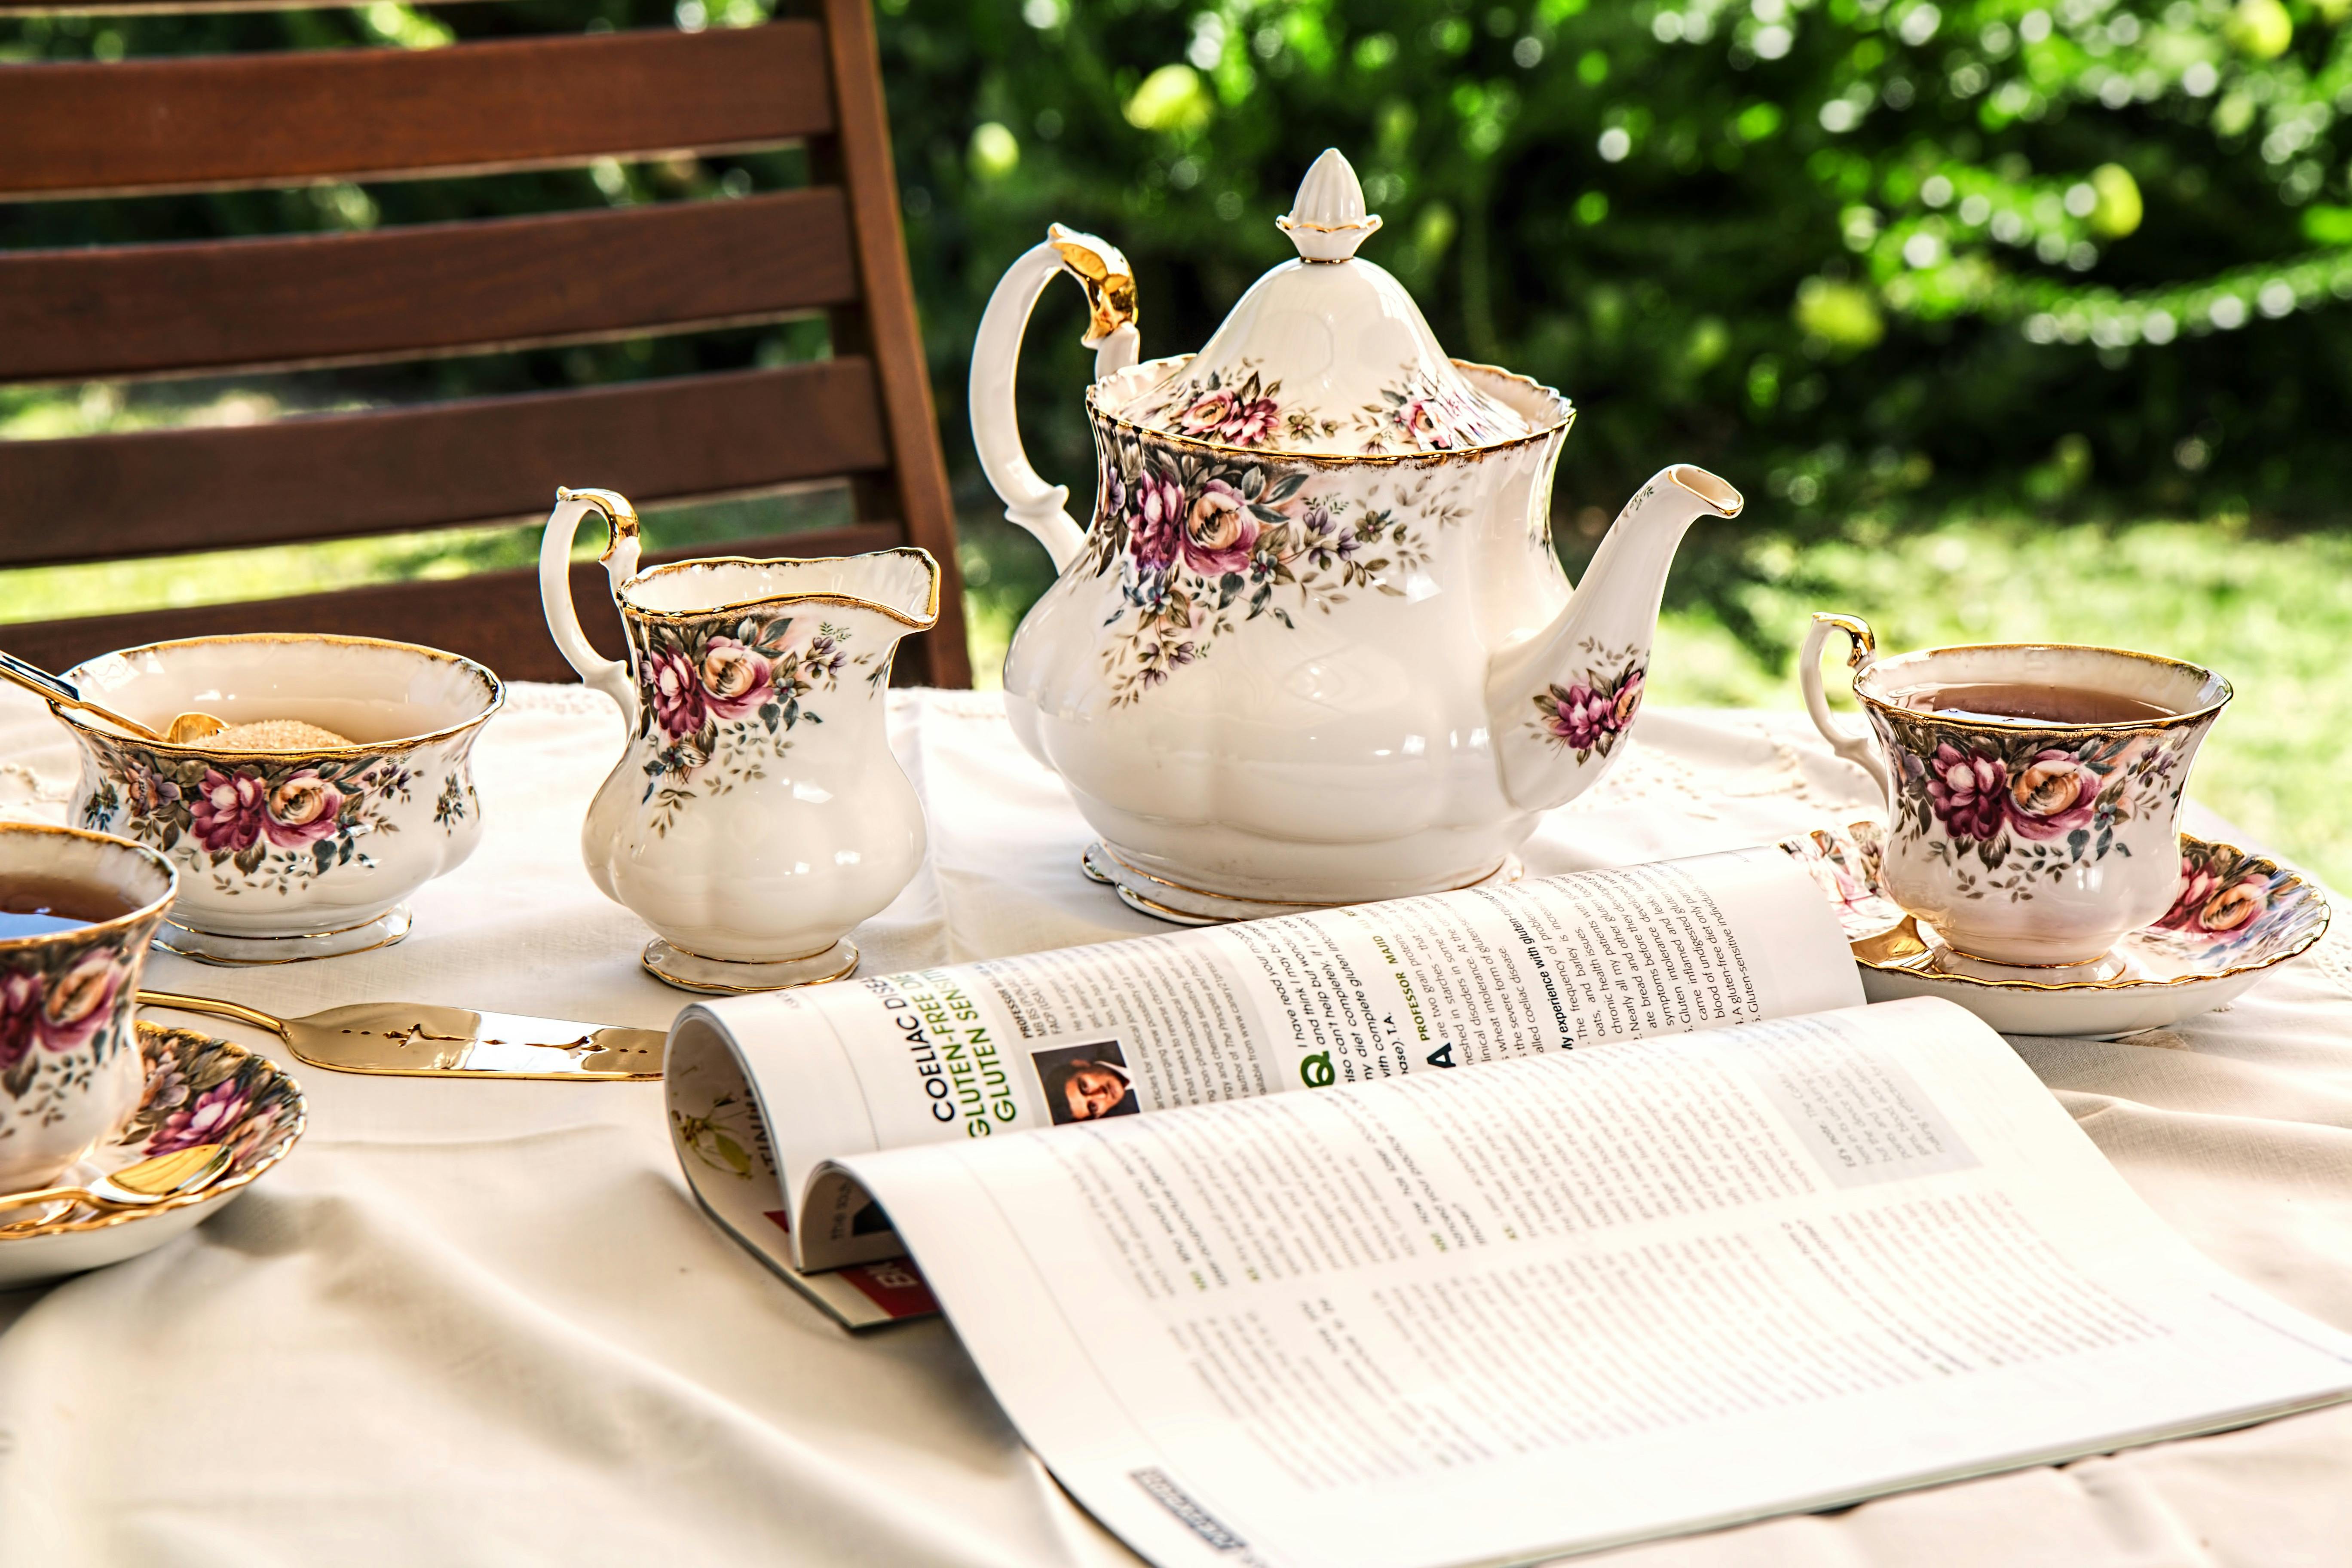 Tea set on the table | Photo: Pexels